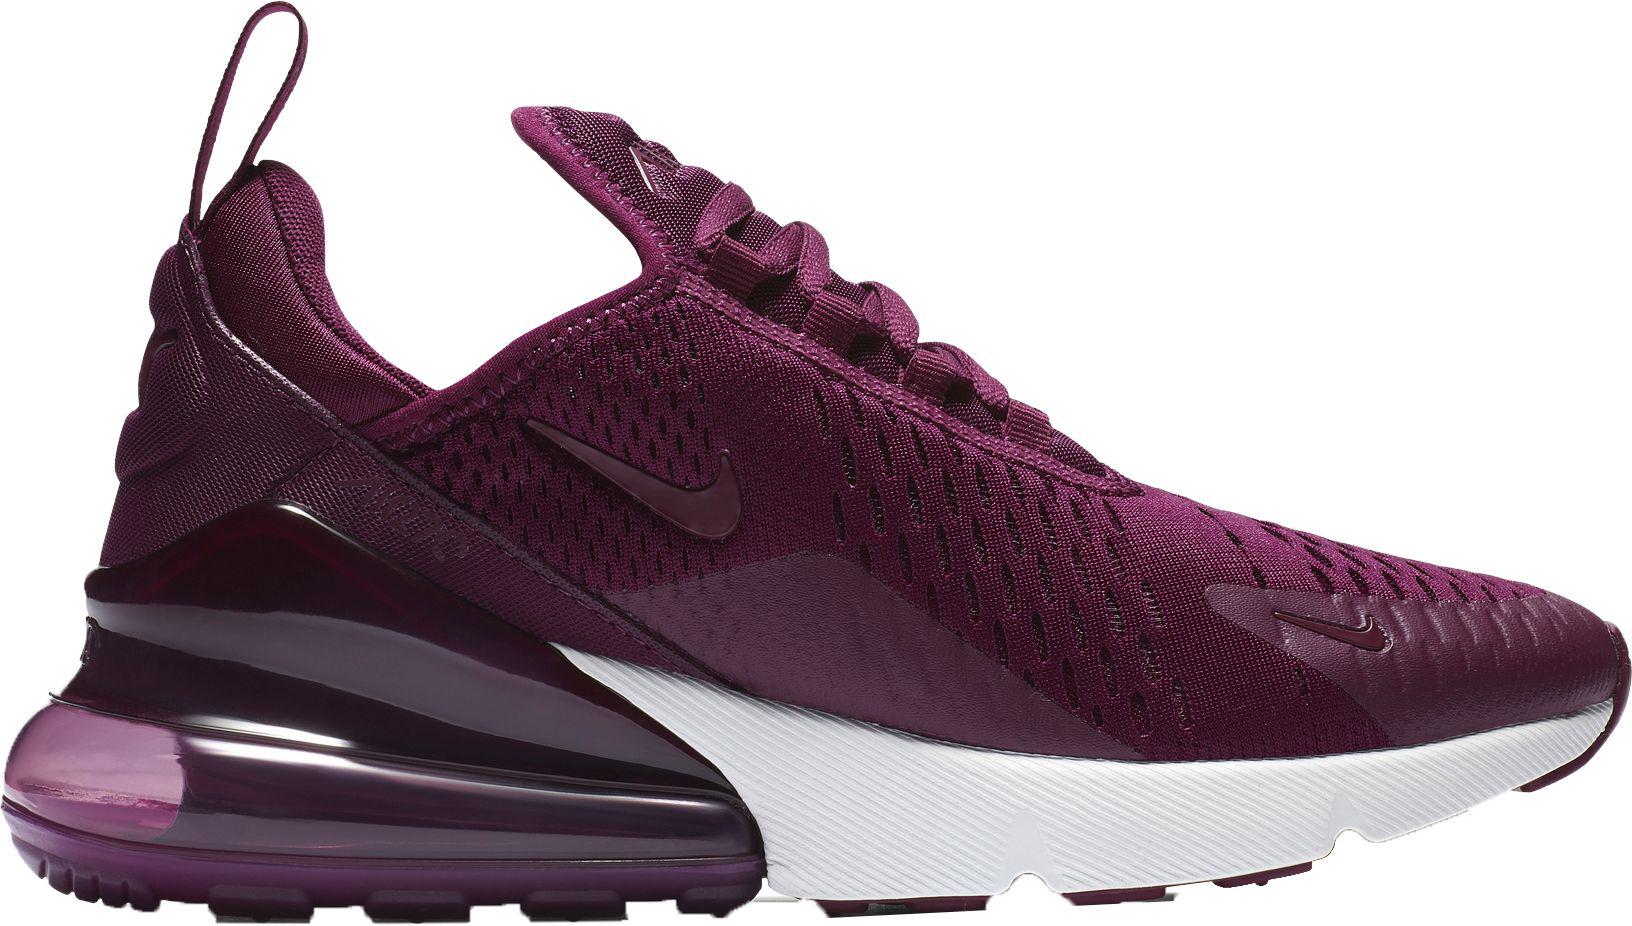 ثلاجة  بابين Nike Rubber Air Max 270 Shoes in Burgundy (Purple) | Lyst ثلاجة  بابين